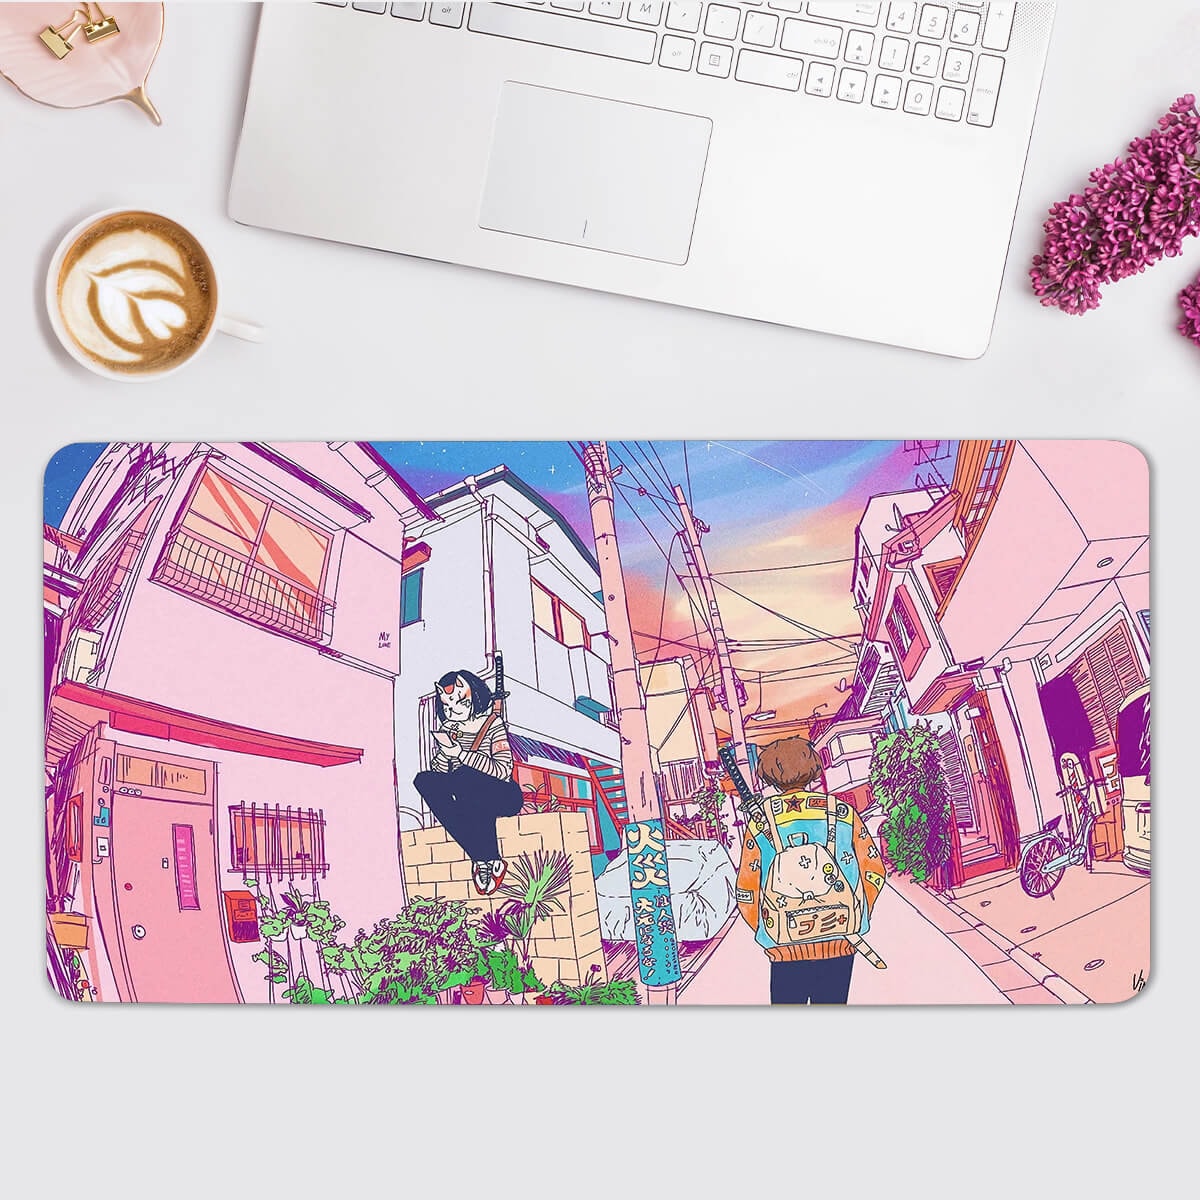 Mouse Pad Gaming Accessories Gabinete Gamer Keyboard Anime Desk Mat NonSlip  Laptop Mousepad Kakashi Gaara Sasuke Design A8791216 From F9uo, $15.09